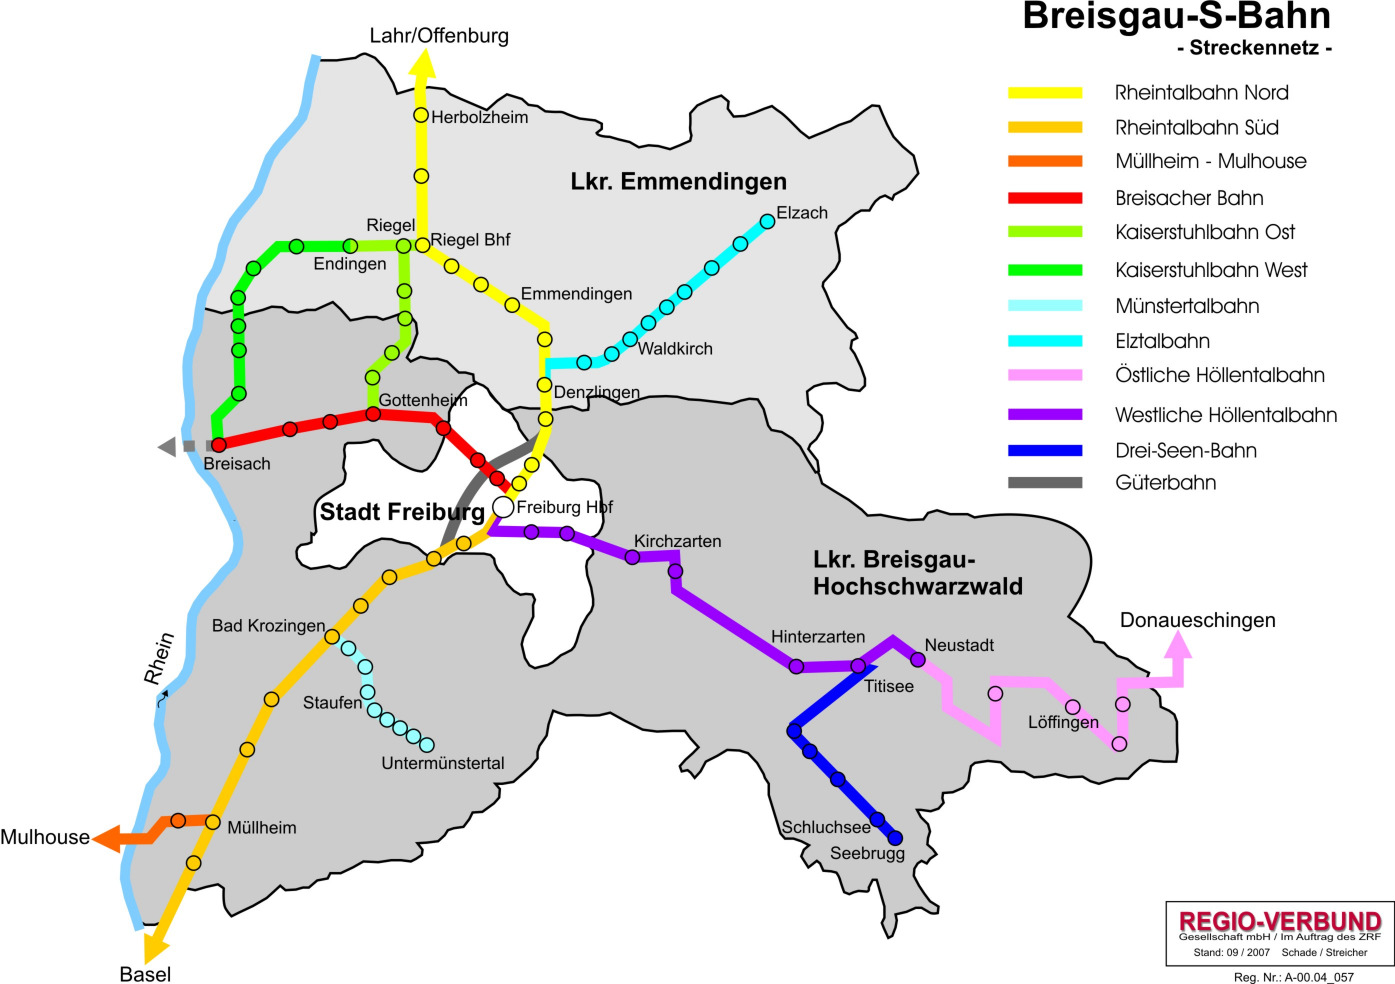 Breisgau-S-Bahn 2005 -